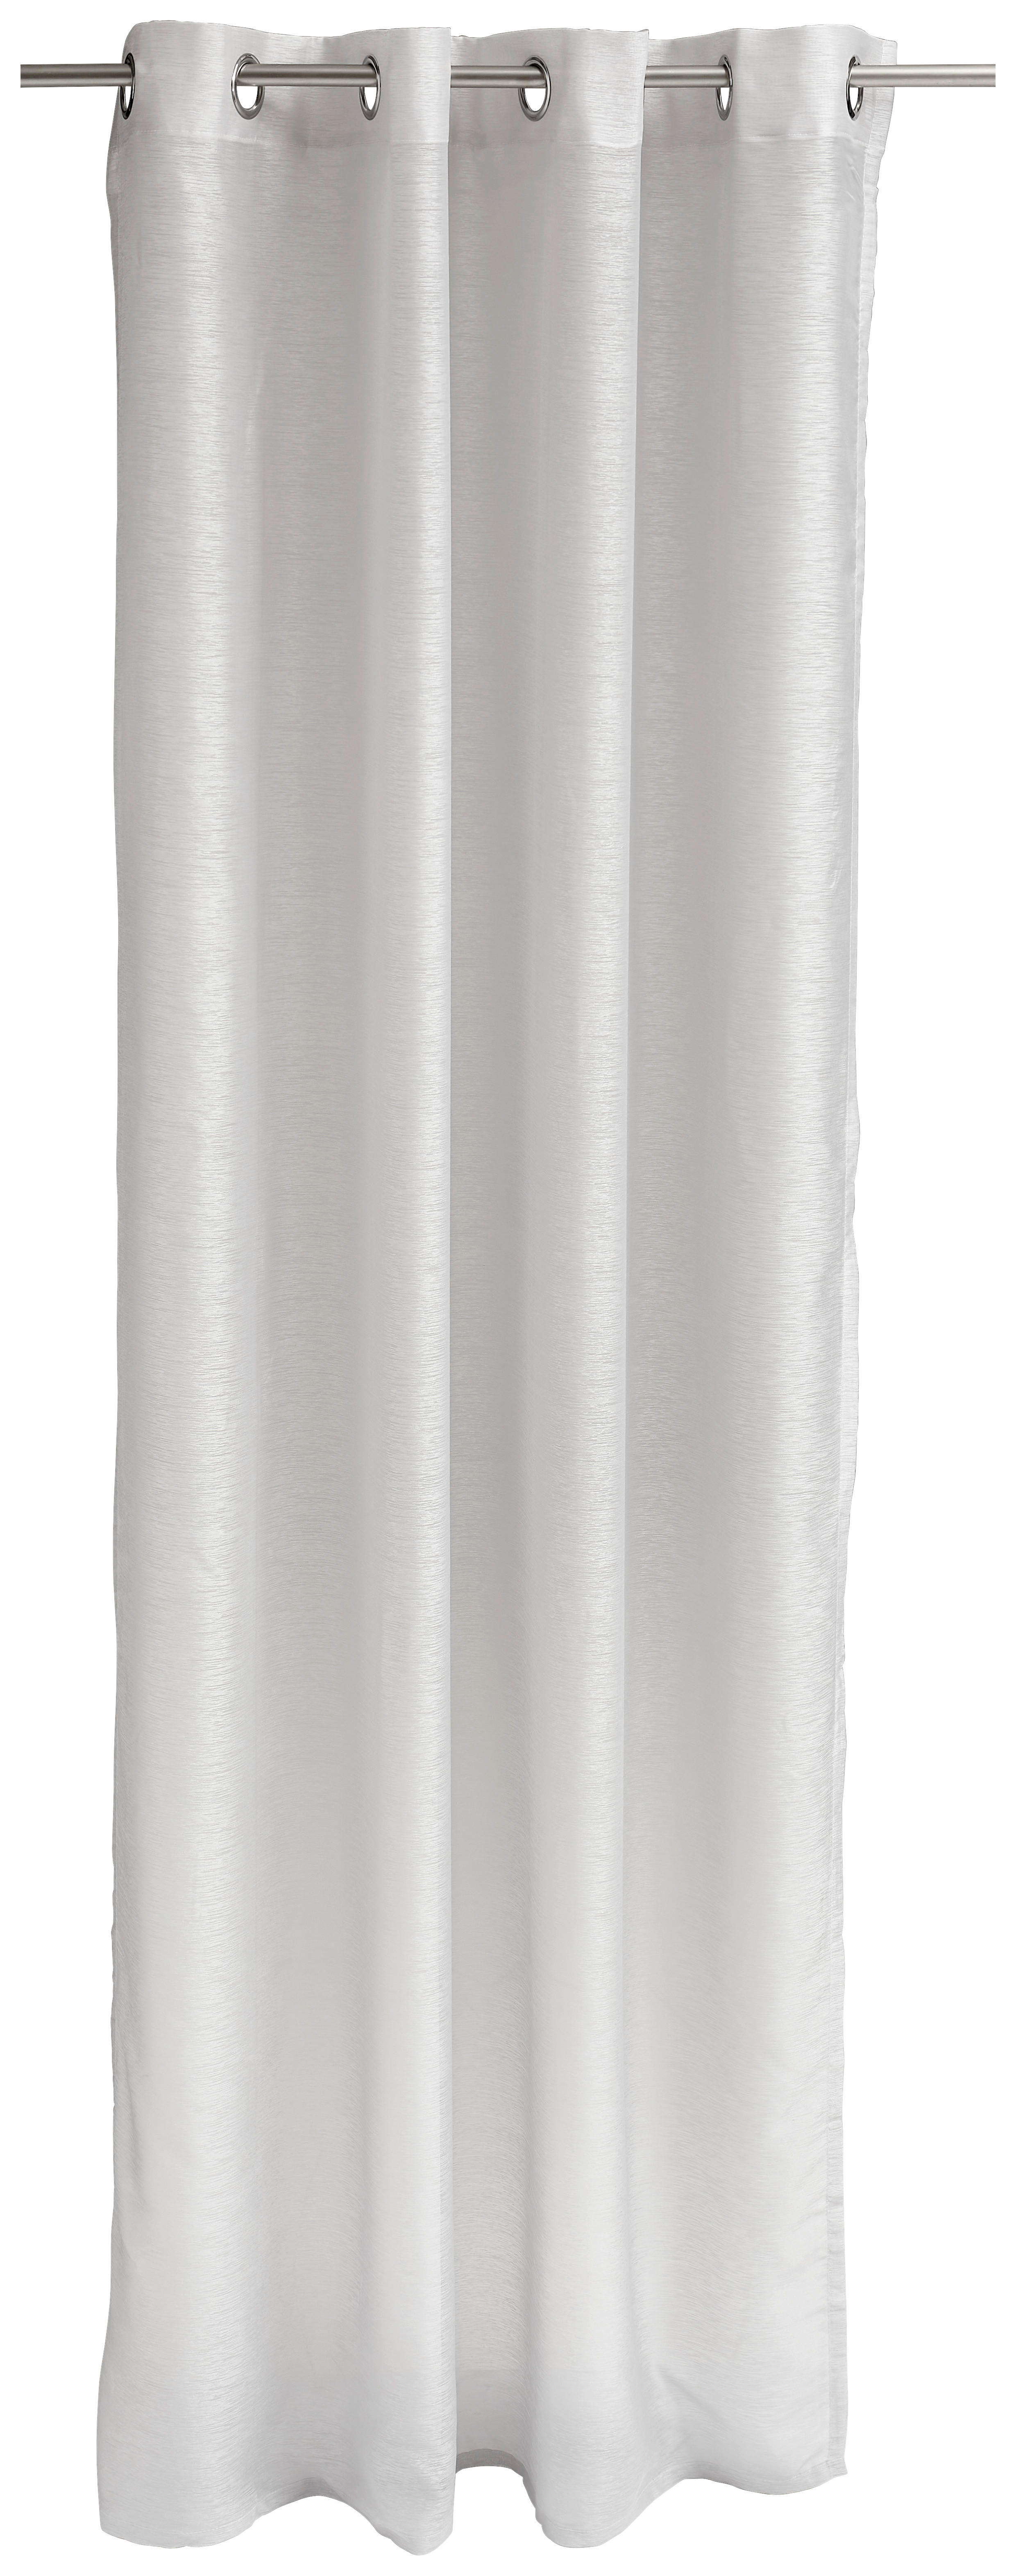 ÖSENSCHAL T-Clean transparent 140/250 cm   - Hellgrau, Basics, Textil (140/250cm) - Tom Tailor